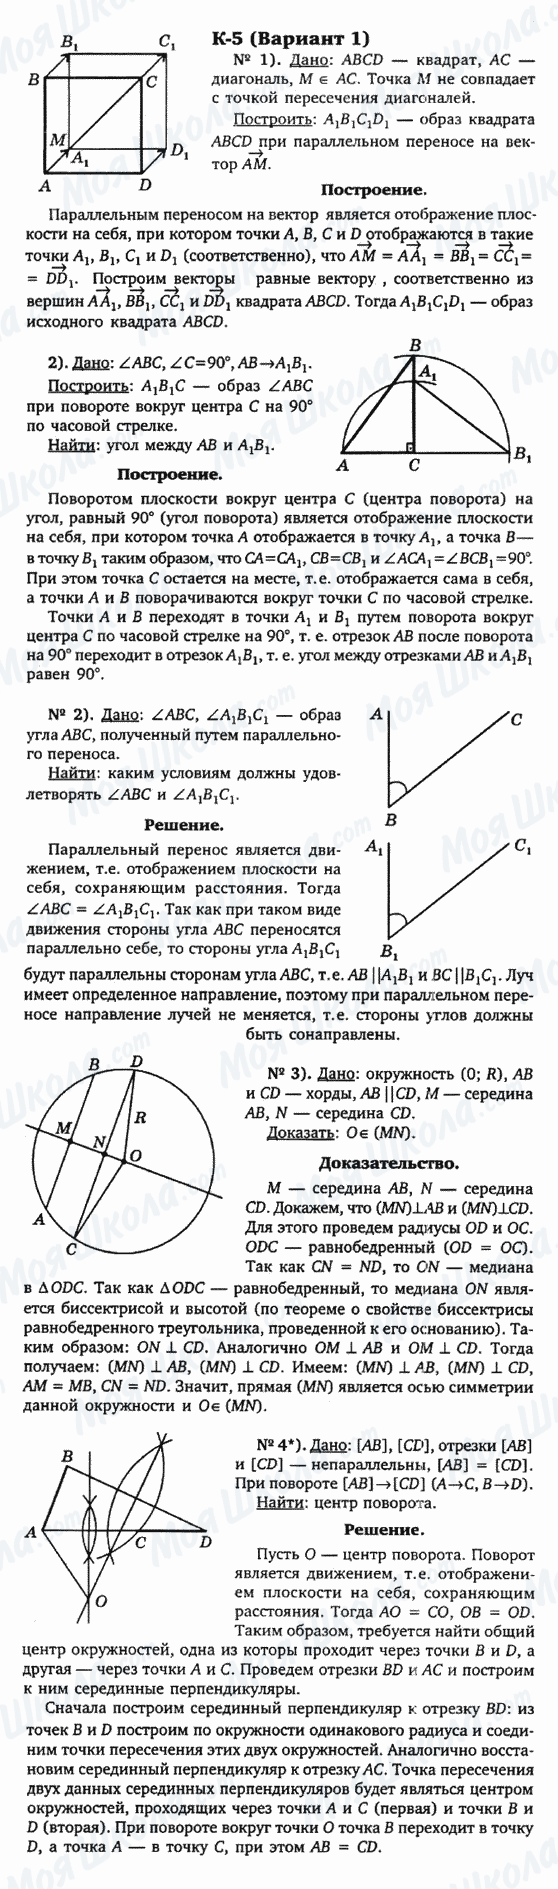 ГДЗ Геометрія 9 клас сторінка к-5(вариант 1)